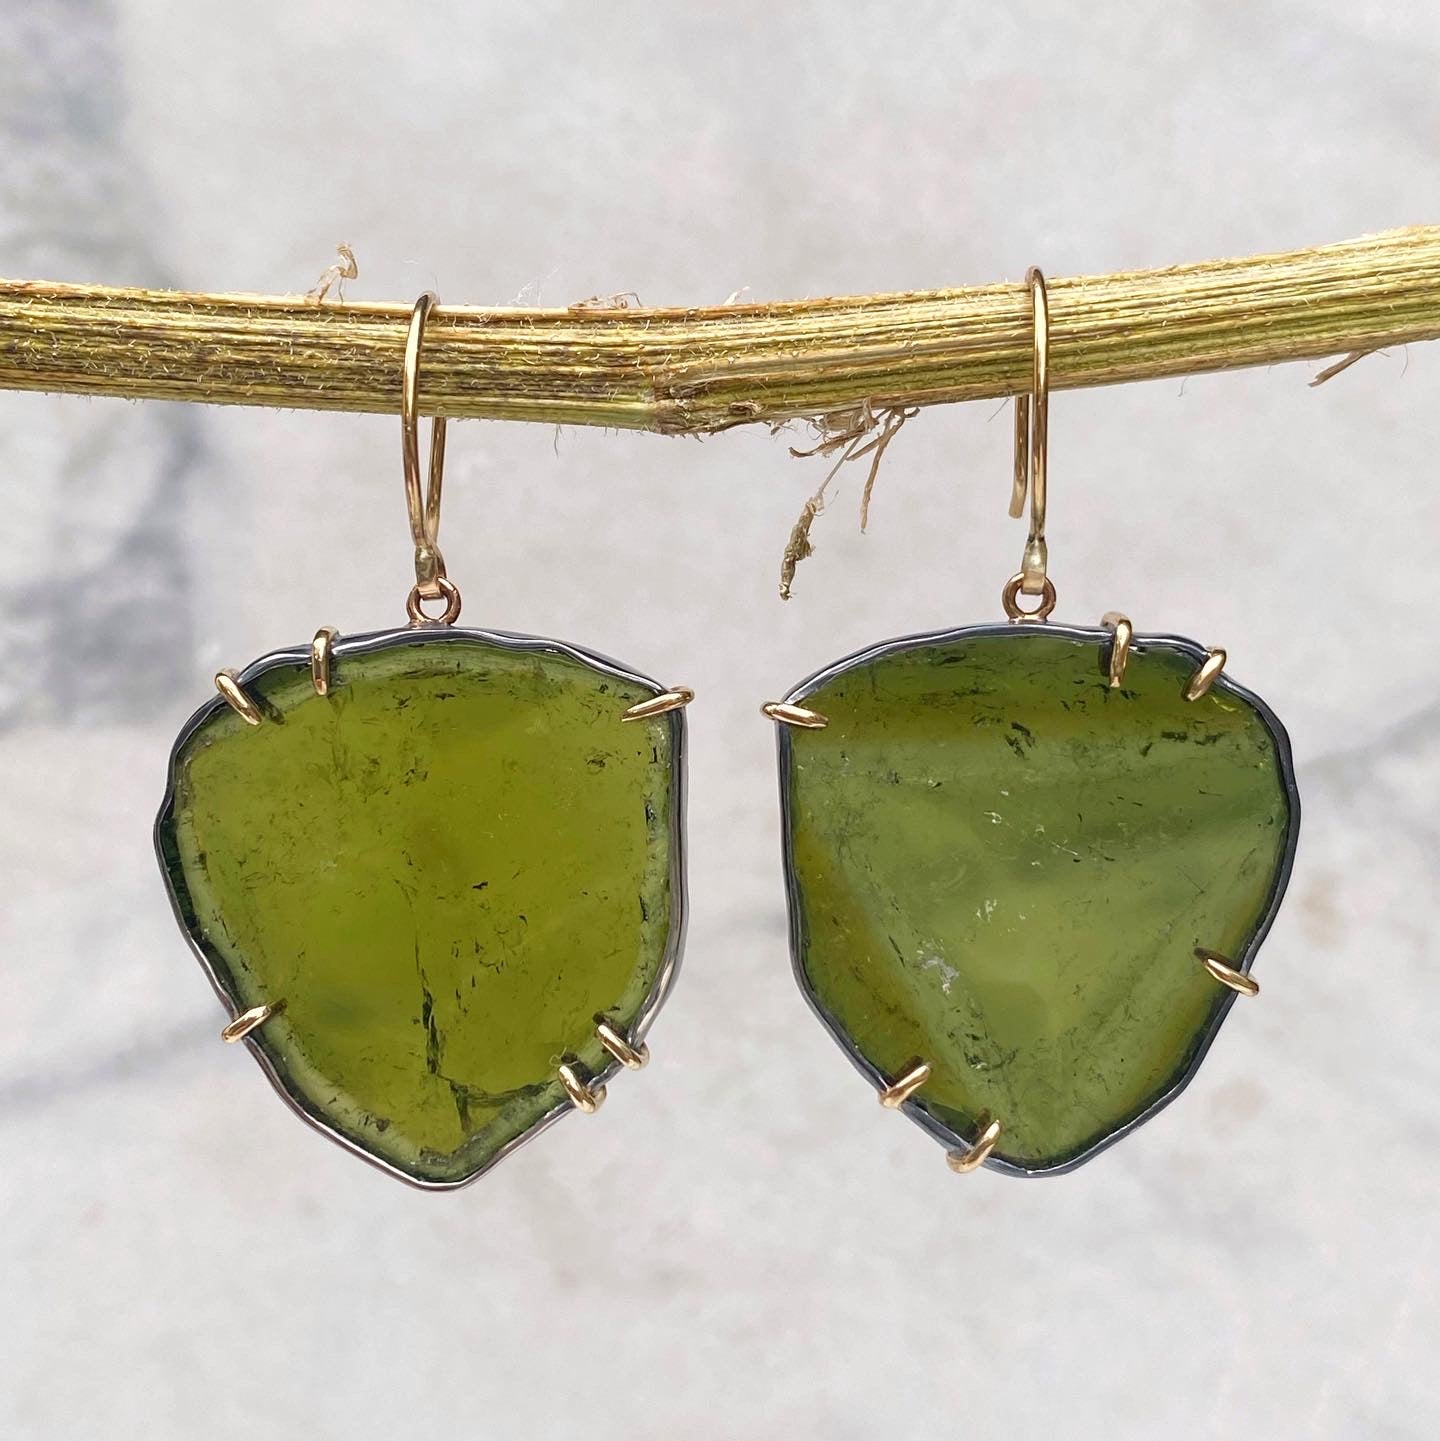 Green Tourmaline Slice Earrings